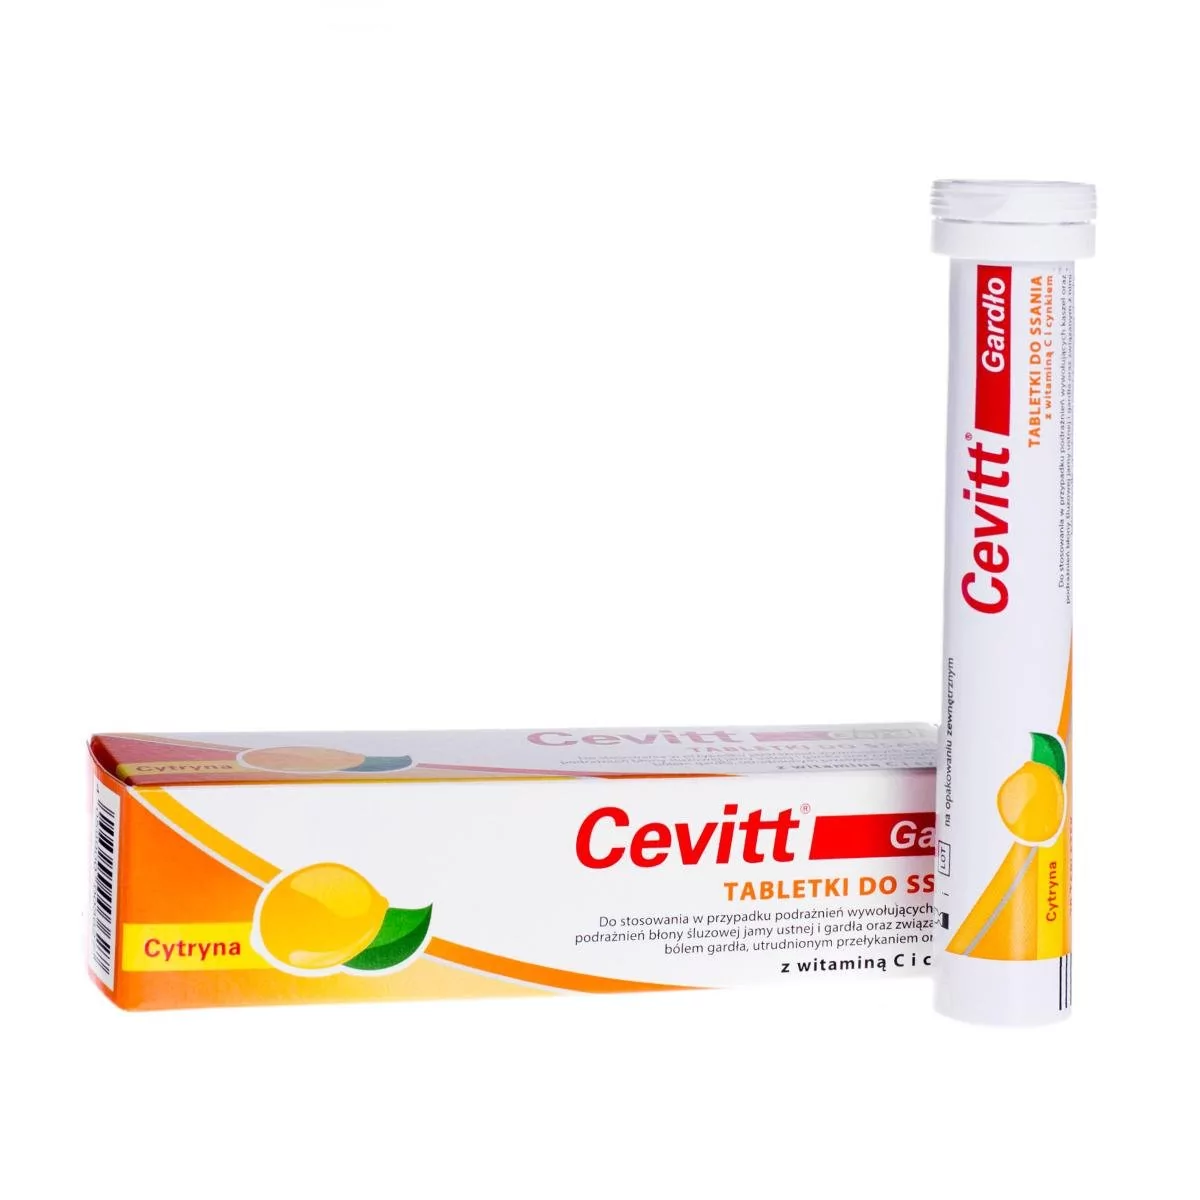 ALPEN PHARMA AG S.A. Cevitt Gardło z witaminą C i cynkiem smak cytrynowy 20 tabletek 5075351